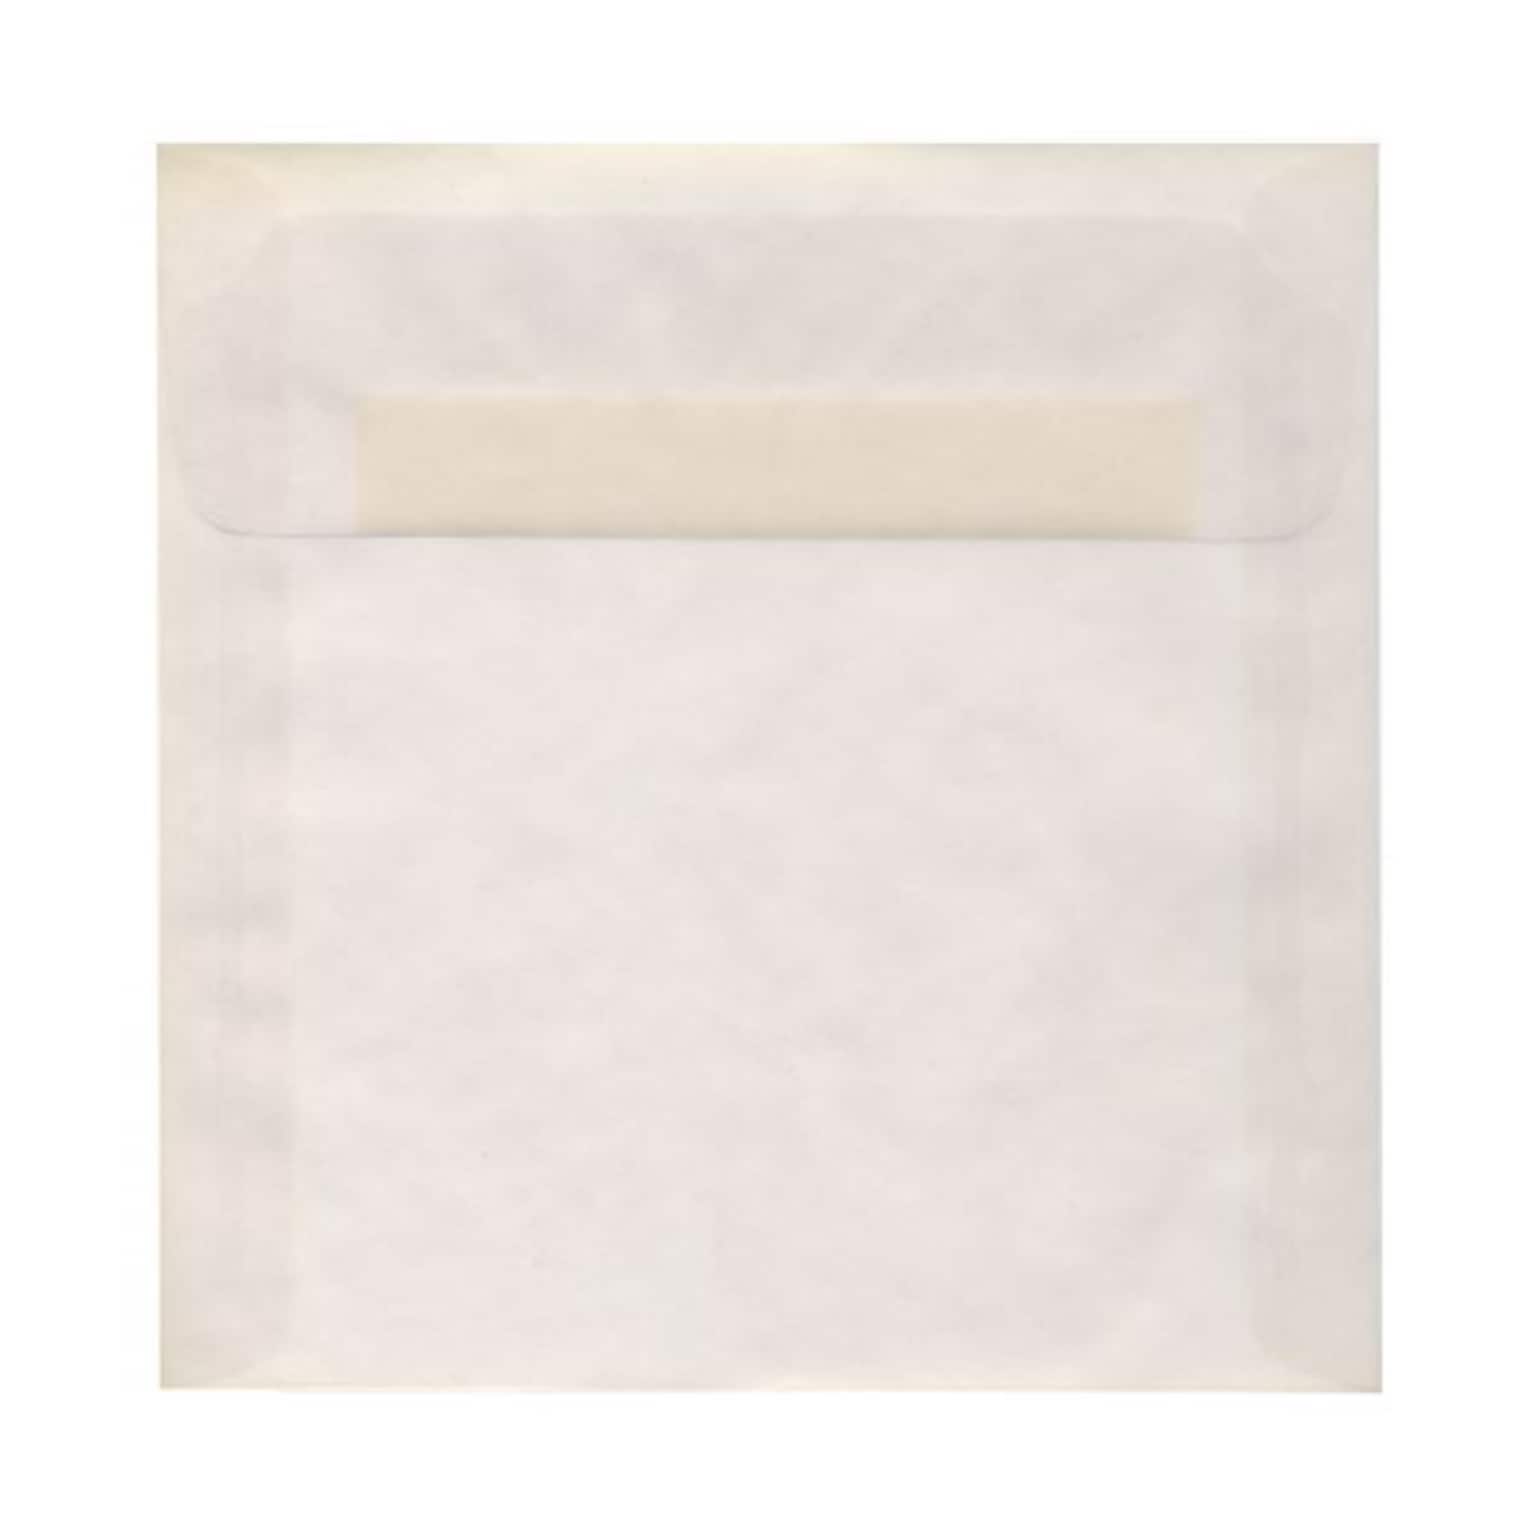 JAM Paper® 9 x 9 Square Translucent Vellum Invitation Envelopes, Clear, 25/Pack (2851355)